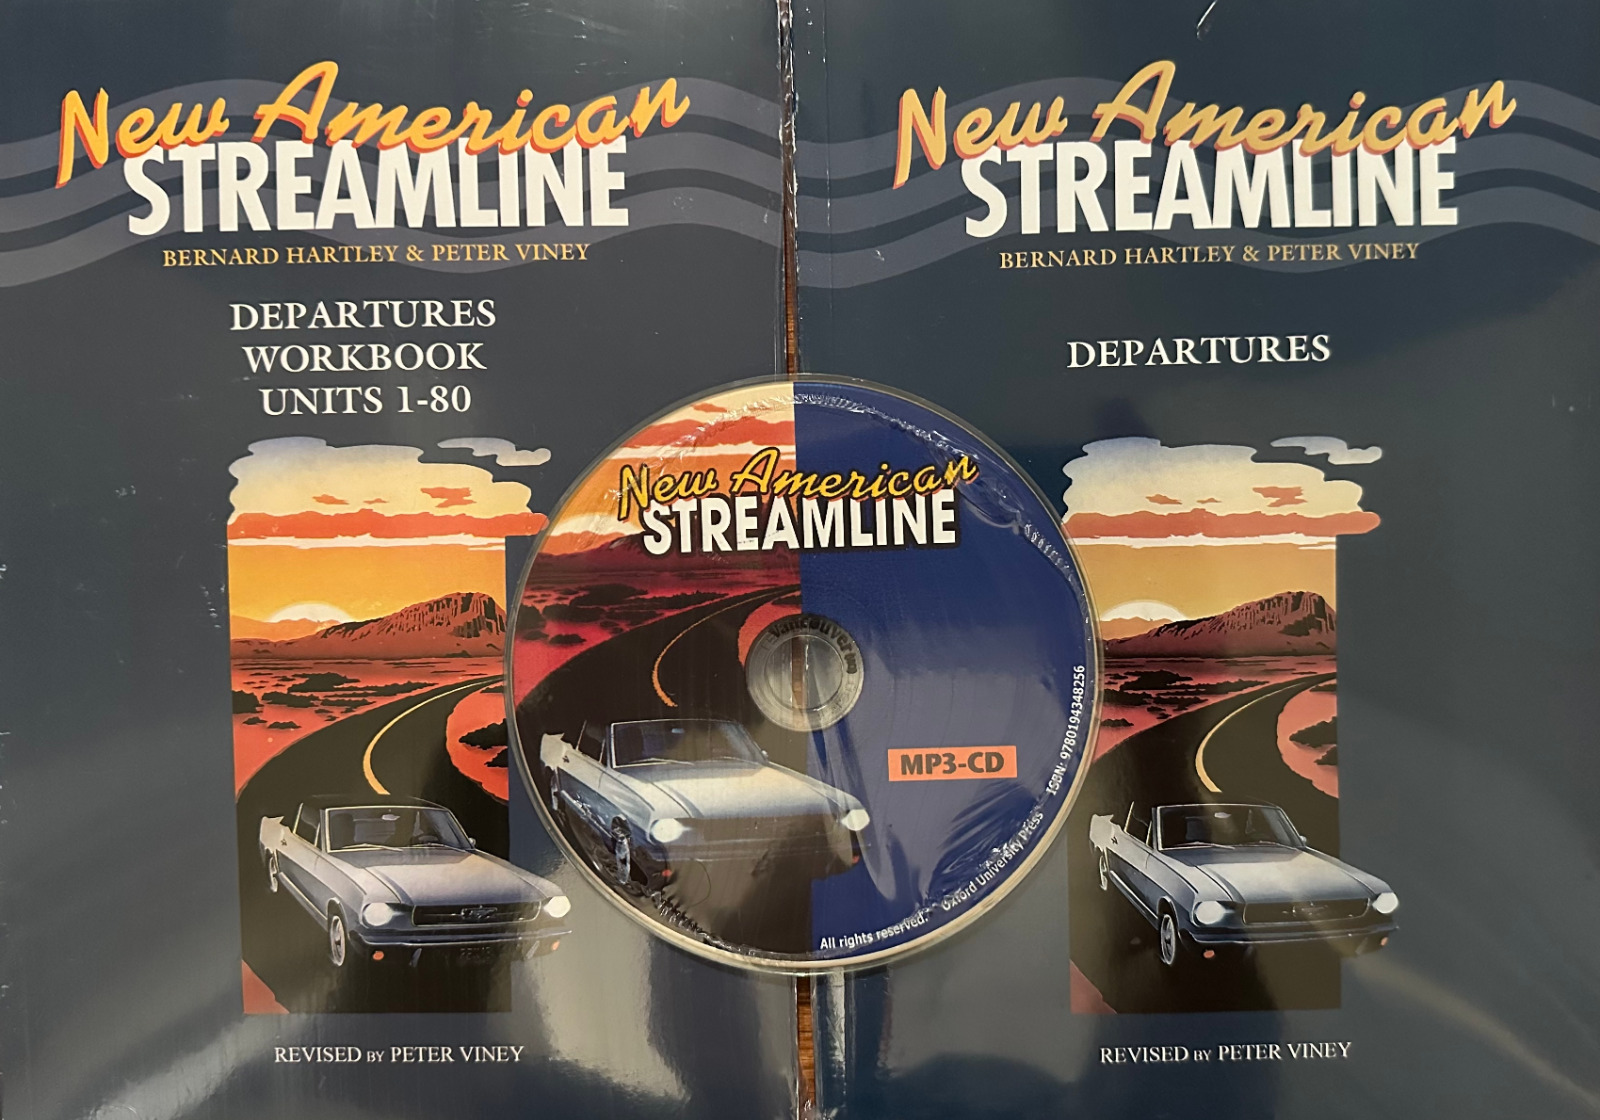 New American Streamline: DEPARTURES / Bundle: Textbook, Workbook, TextbookMP3-CD